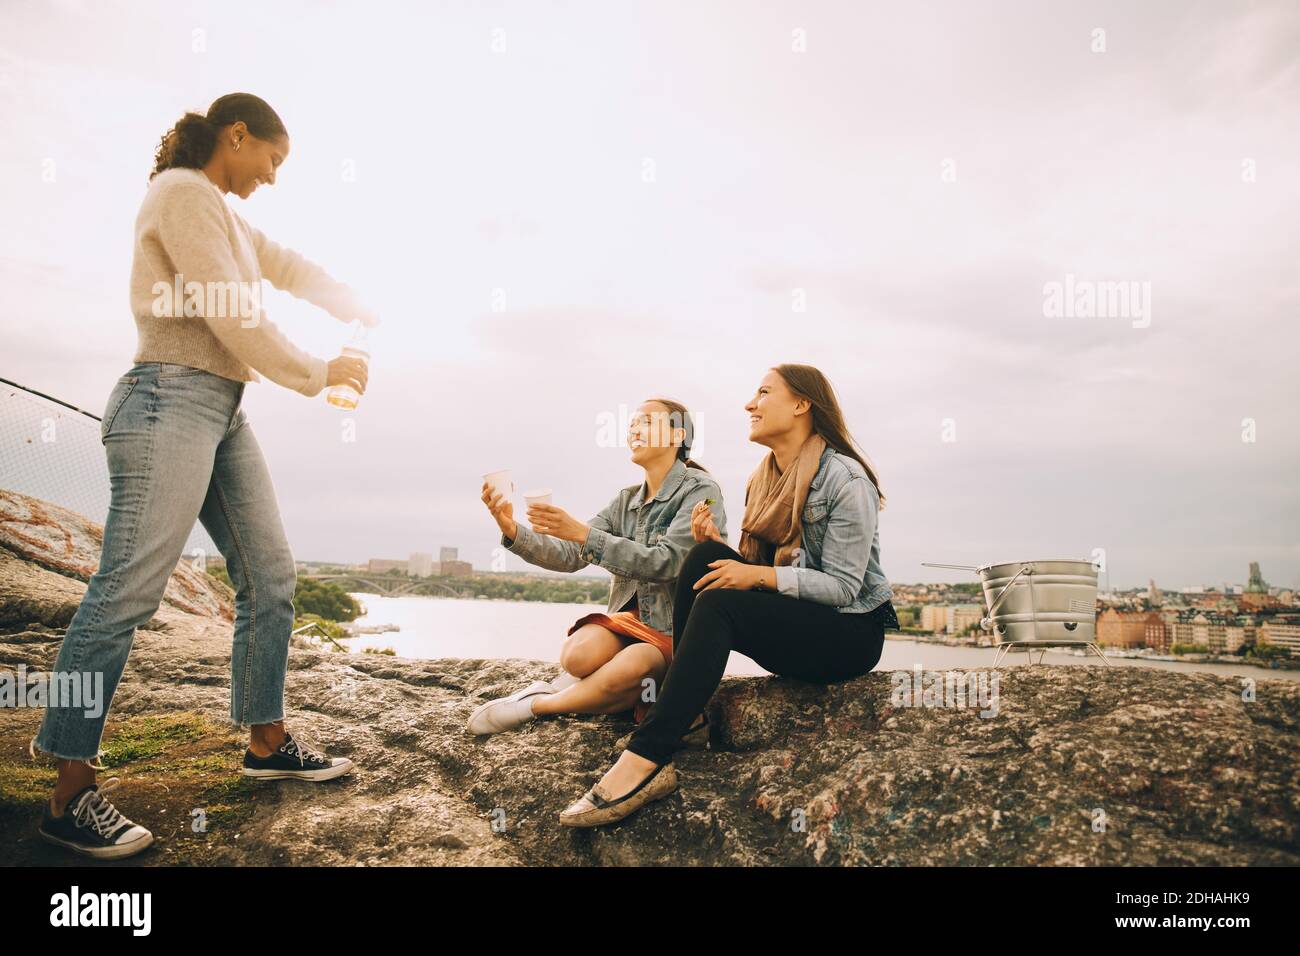 Femme donnant une boisson à des amis sur la formation de roche au bord du lac contre le ciel Banque D'Images